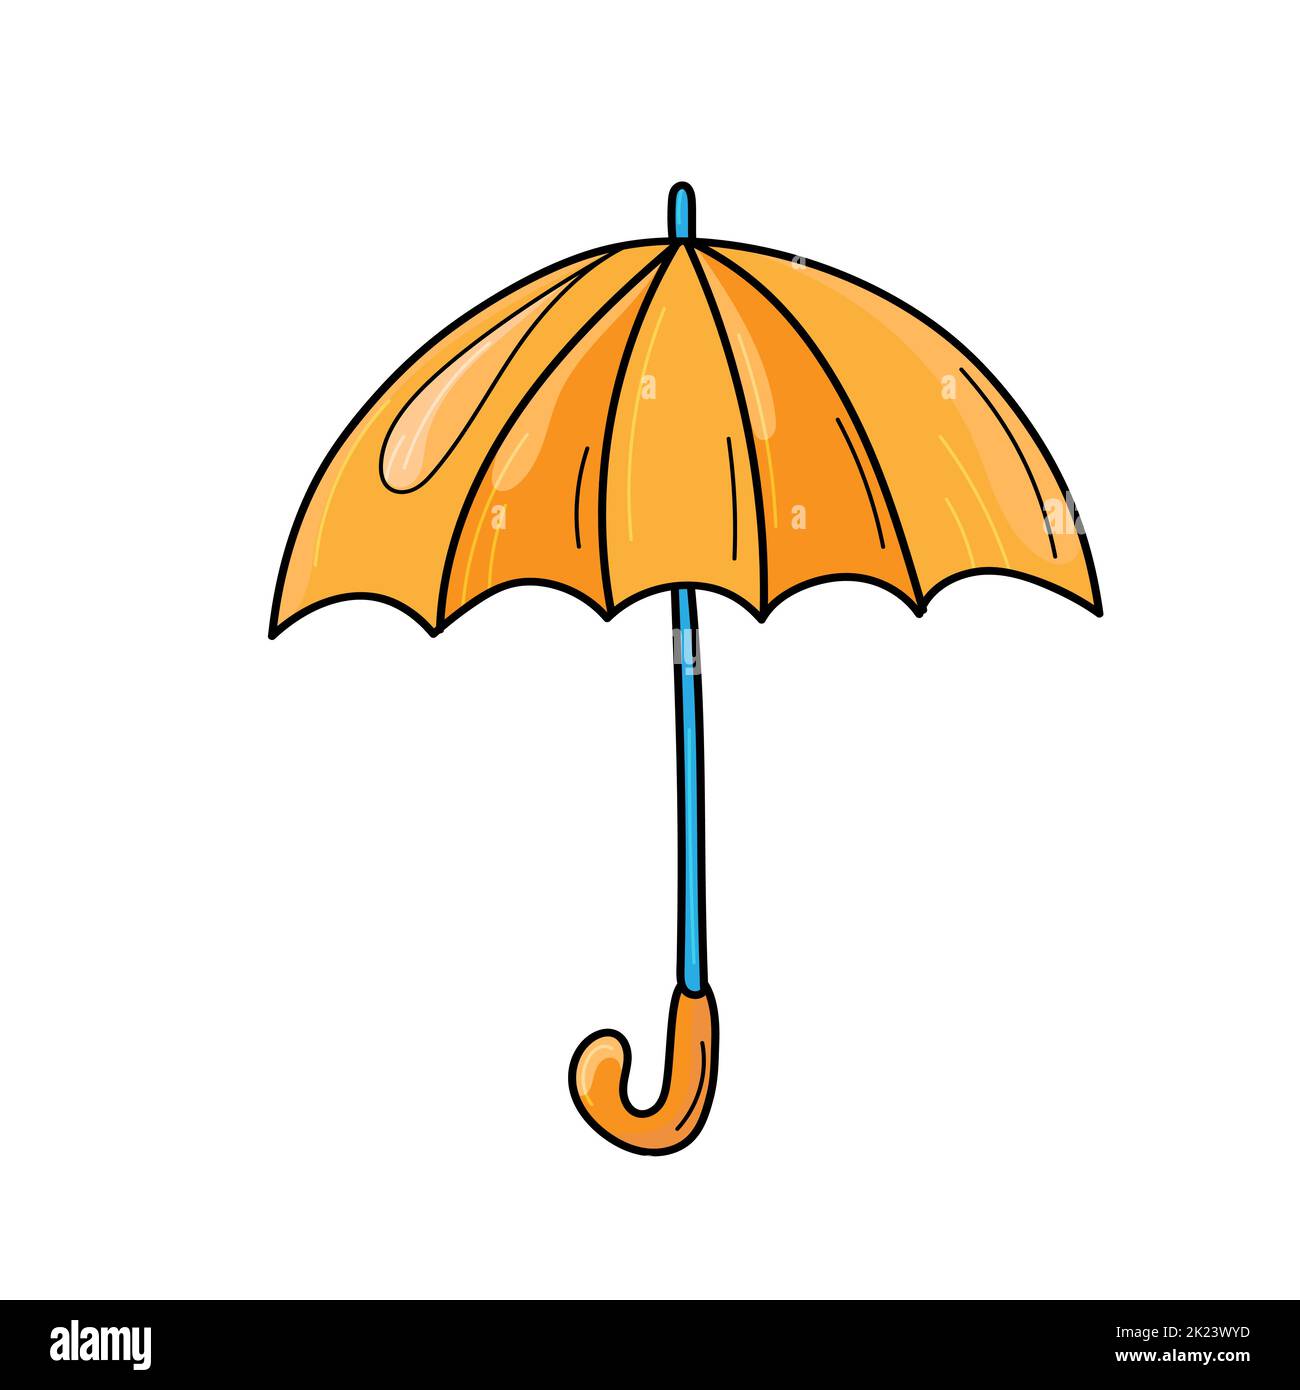 Joli parapluie orange. Illustration vectorielle d'un parapluie ouvert. Parapluie d'automne de style dessin animé. Objet vectoriel. Arrière-plan blanc isolé. Illustration de Vecteur